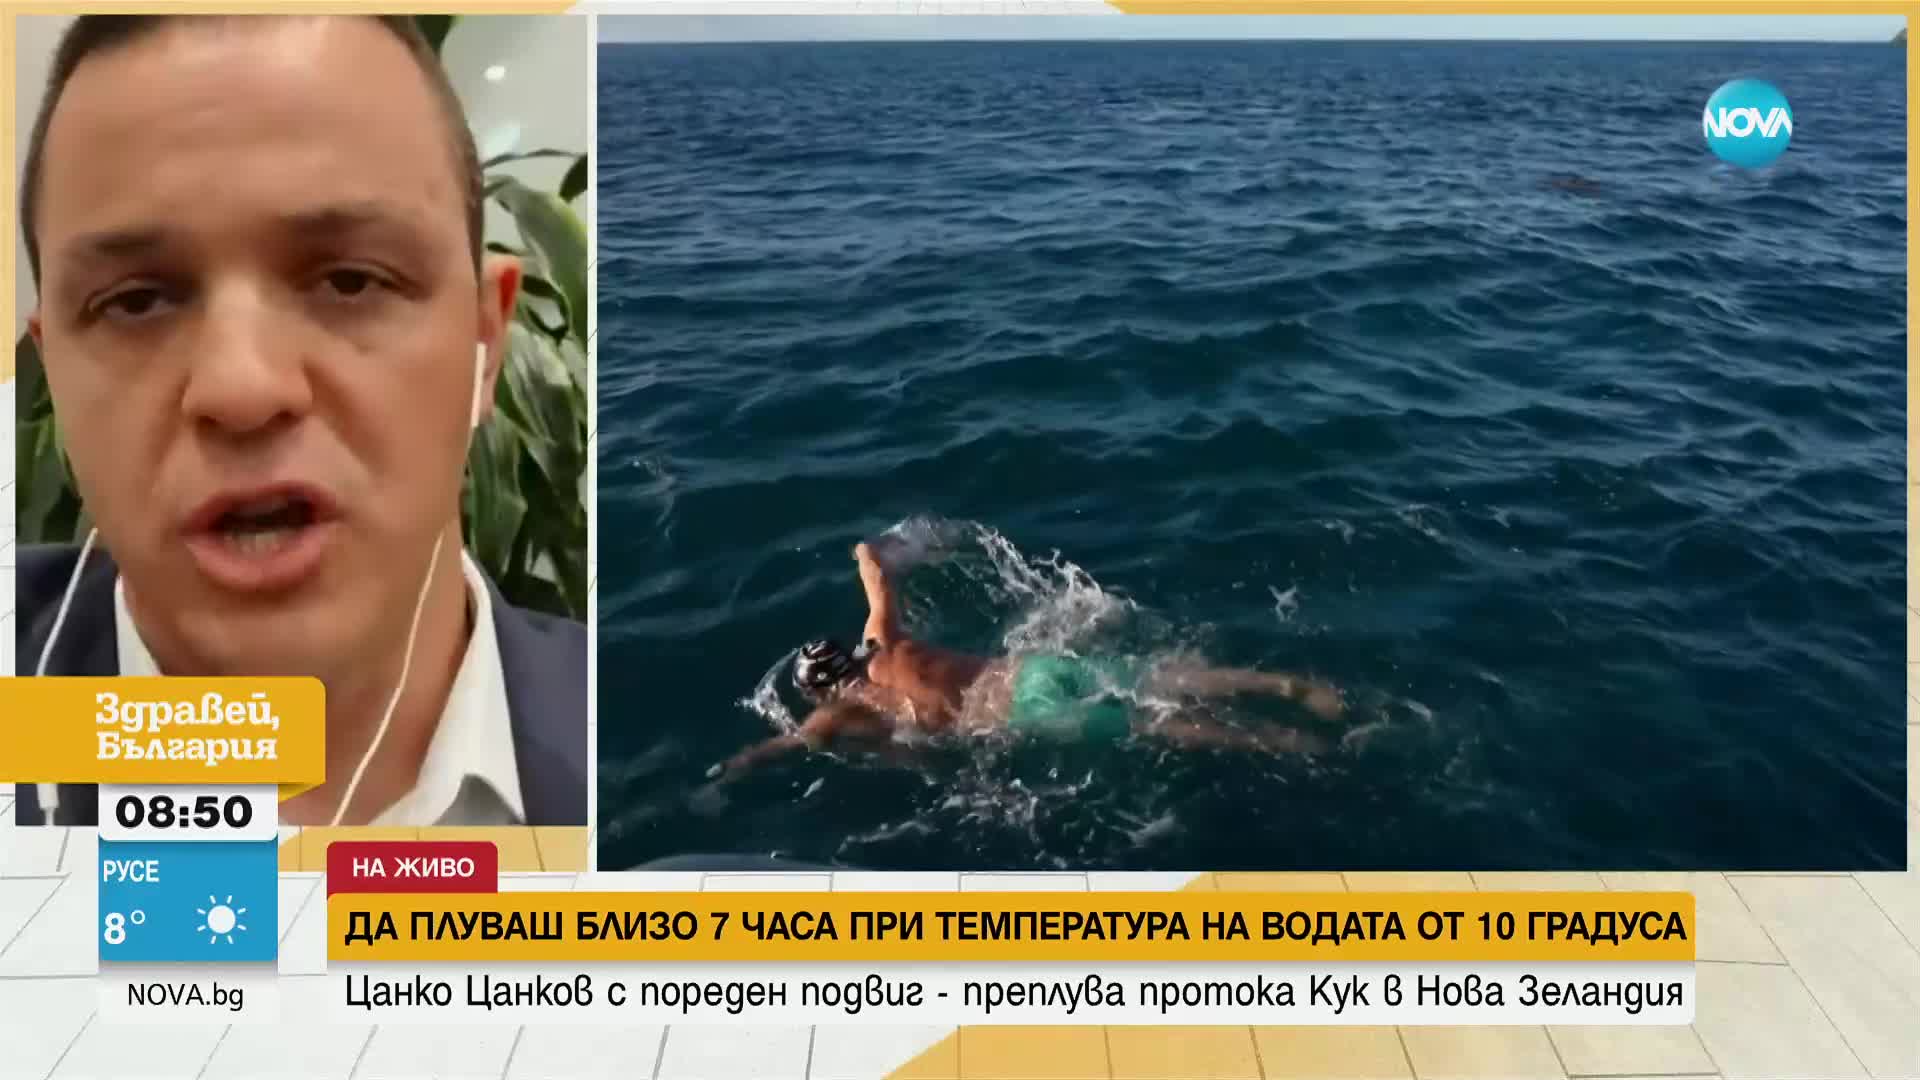 Цанко Цанков изпадал няколко пъти в хипотермия, докато плувал през протокока Кук